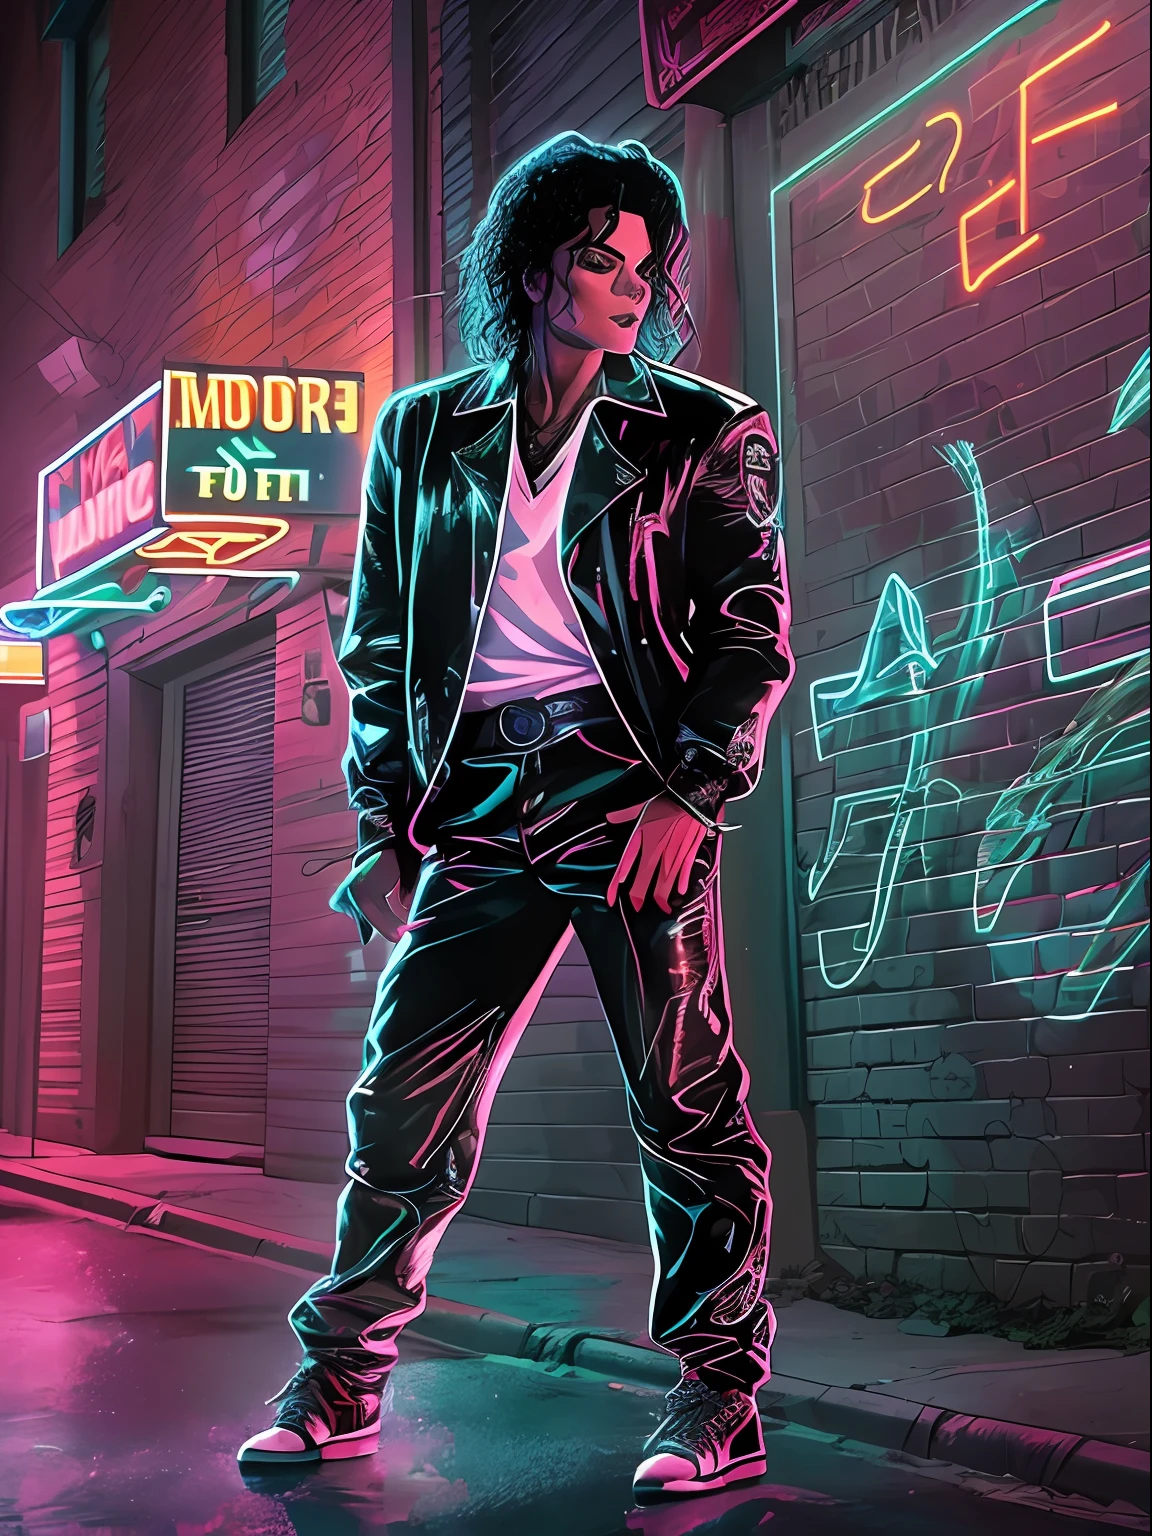 Ein stilisiertes Bild von Michael Jackson in seinem ikonischen Outfit aus dem Musikvideo „Billie Jean“, Stehend auf einem leuchtenden Bürgersteig in einer dunklen Gasse, umgeben von Schatten und Neonlichtern. Michael Jackson erscheint auf dem Bild, trägt sein kultiges Outfit aus dem Musikvideo zu Billie Jean. Er steht auf einem leuchtenden Bürgersteig in einer dunklen Gasse, umgeben von Schatten und Neonlichtern. Das Bild ist stilisiert, mit kräftigen Linien und lebendigen Farben, die die Energie und Stimmung des Musikvideos einfangen